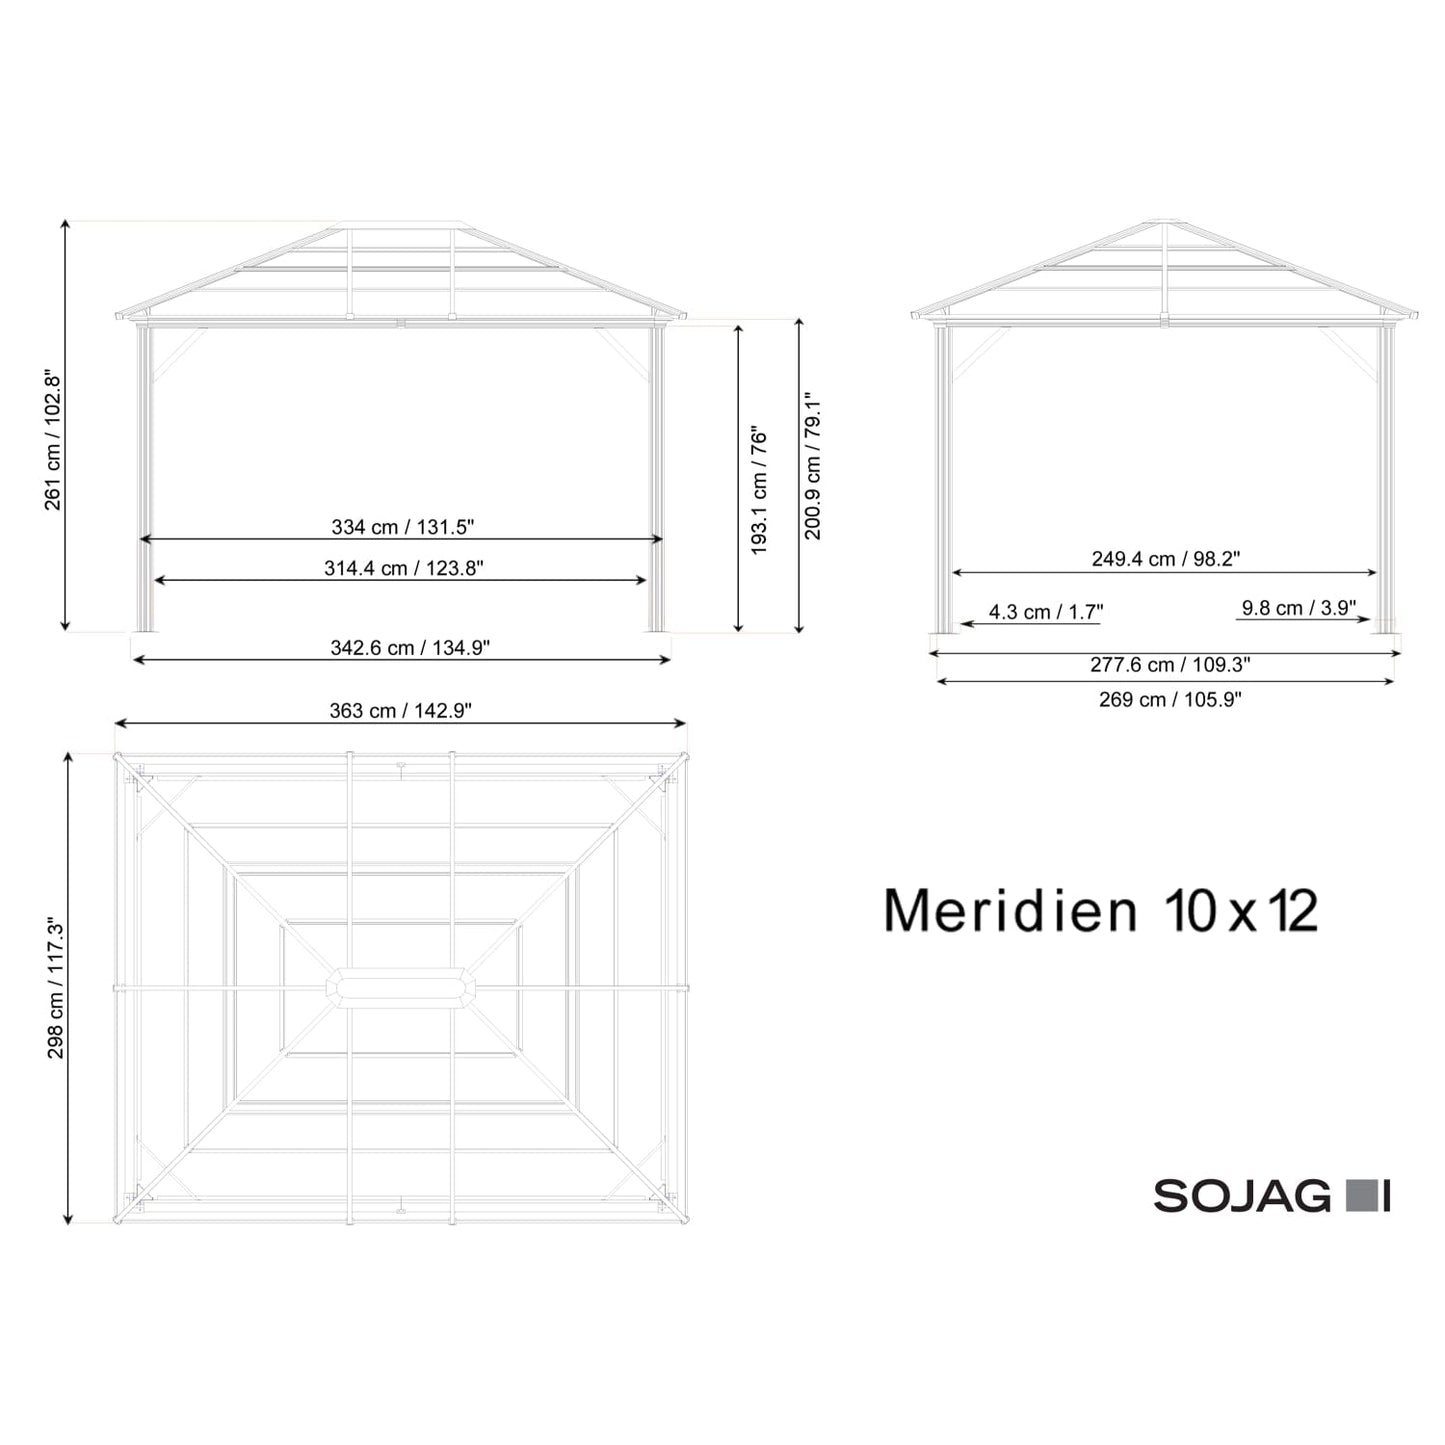 SOJAG Gazebo Sojag | Meridien 10 ft. x 12 ft. Gazebo 500-9168396